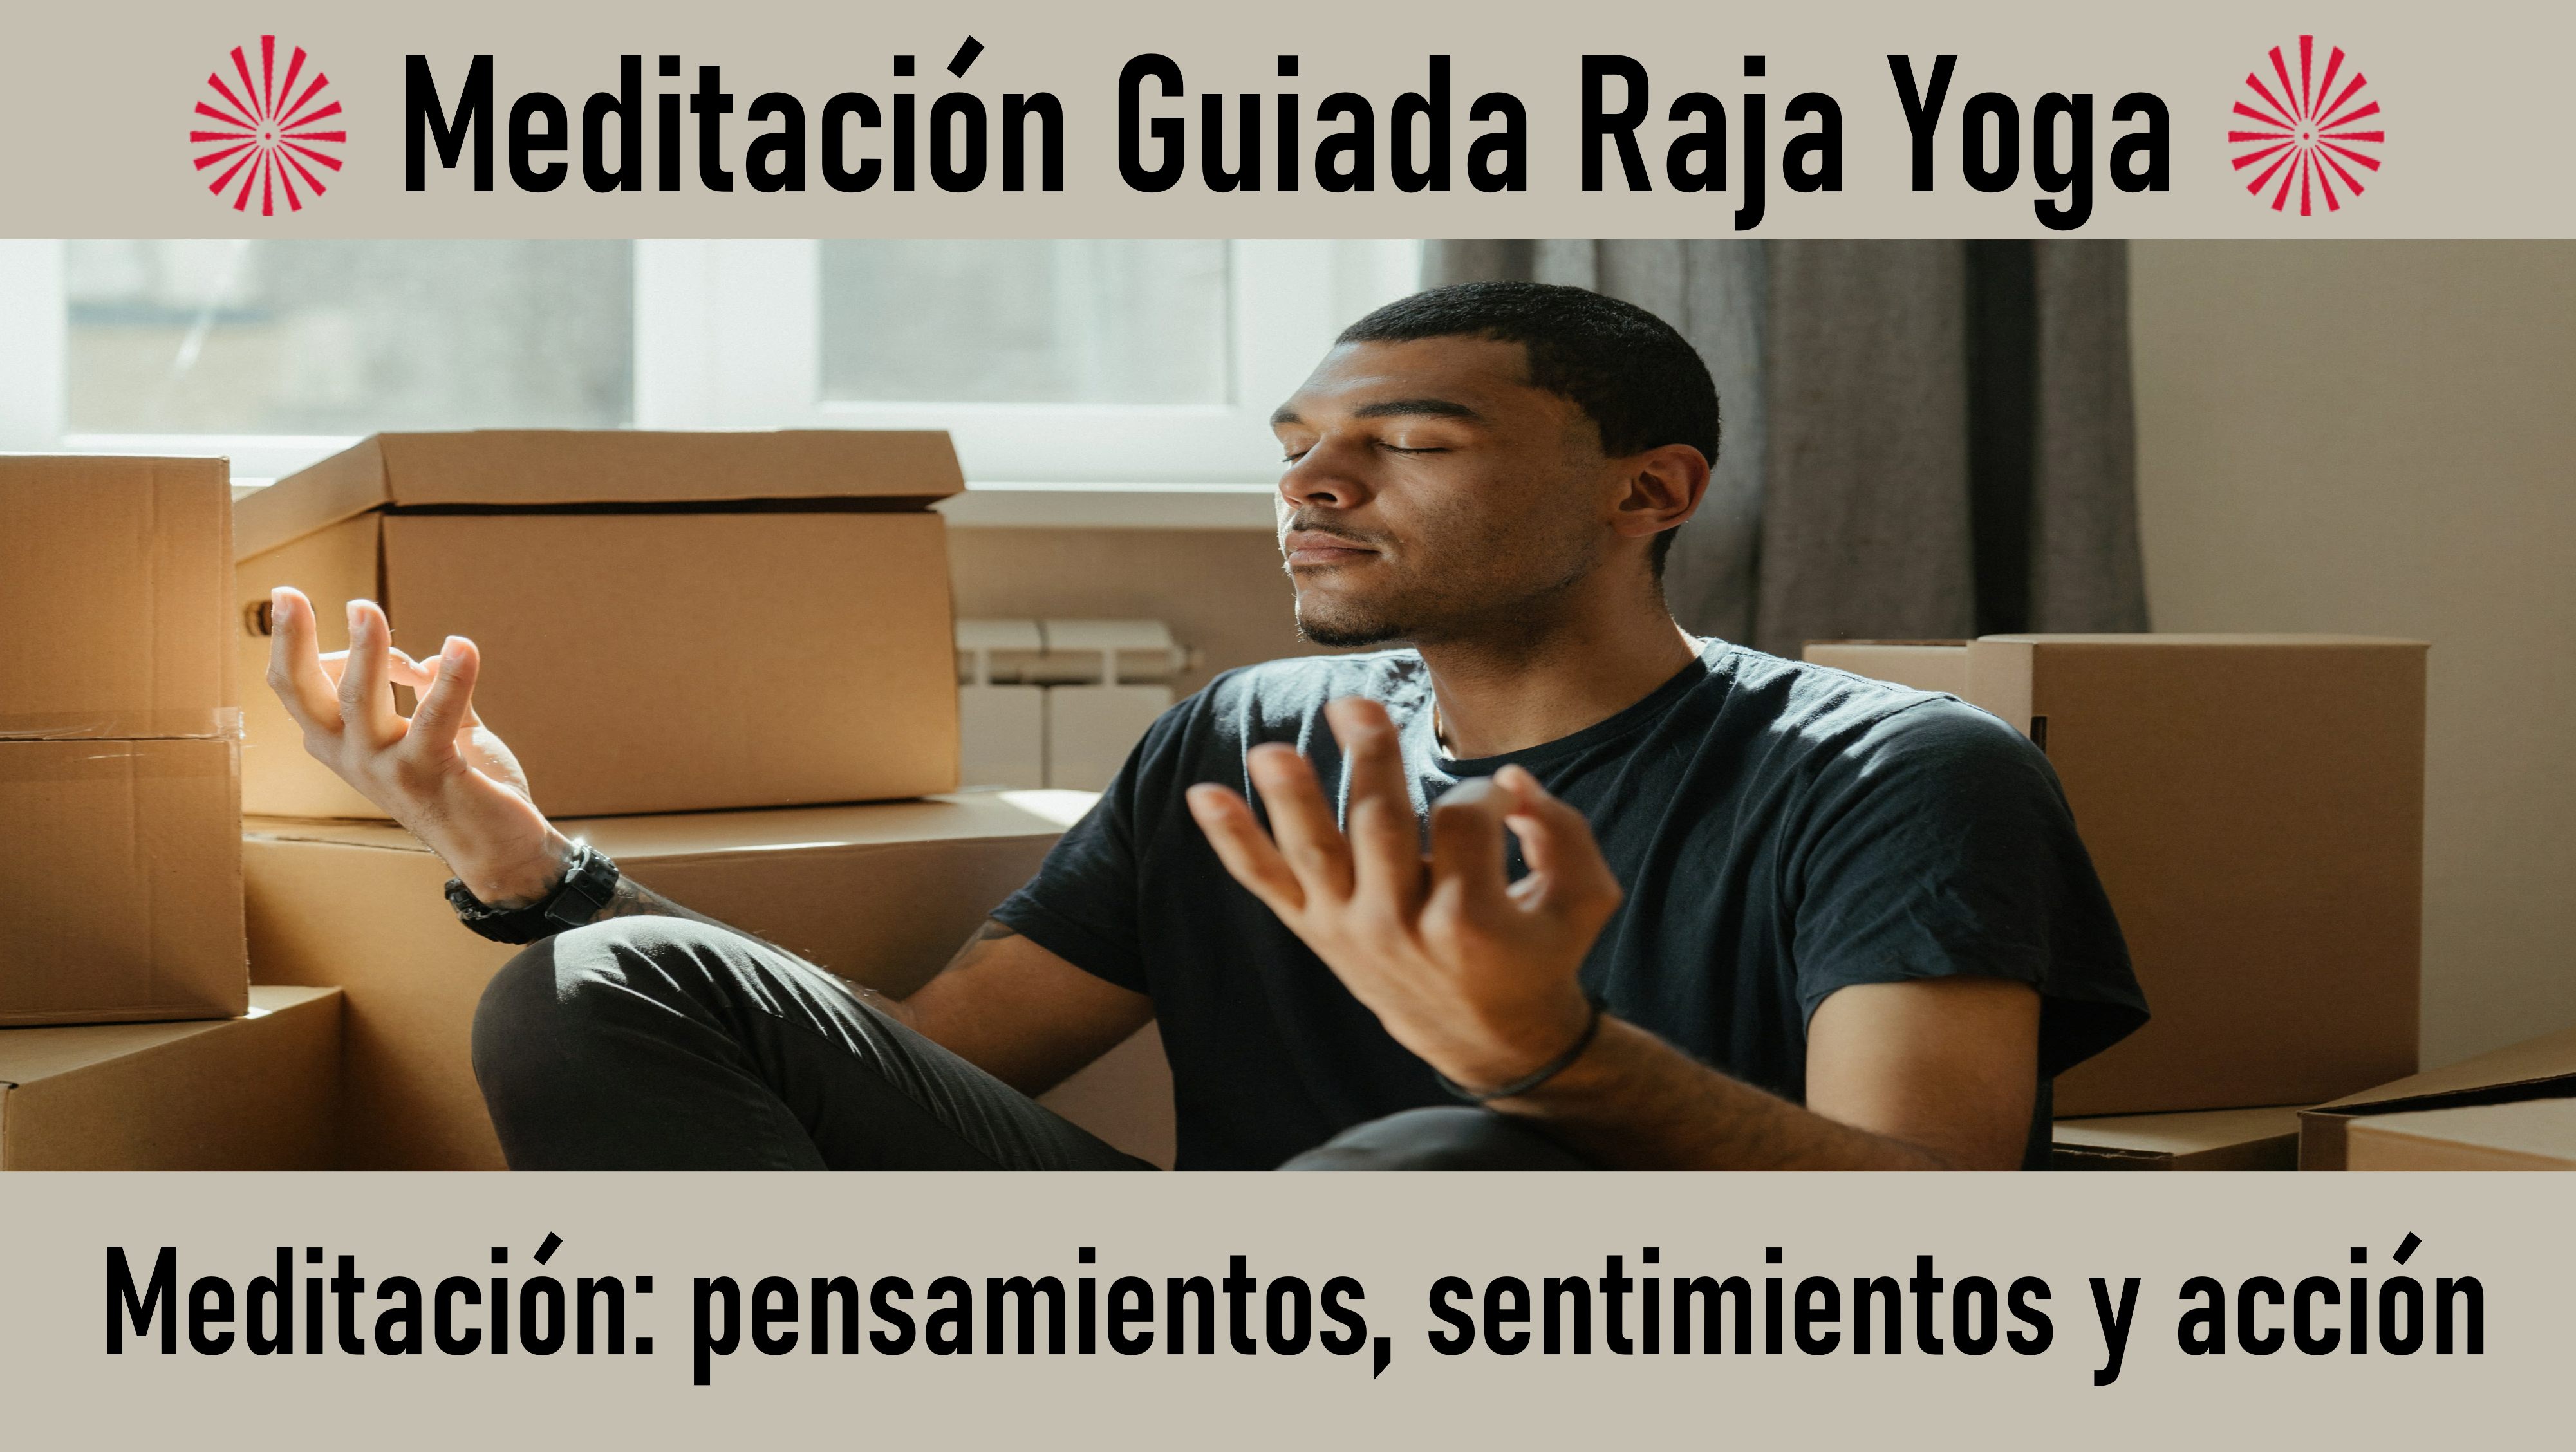 Meditación Raja Yoga: Meditación  pensamientos, sentimientos y acción (4 Septiembre 2020) On-line desde Barcelona